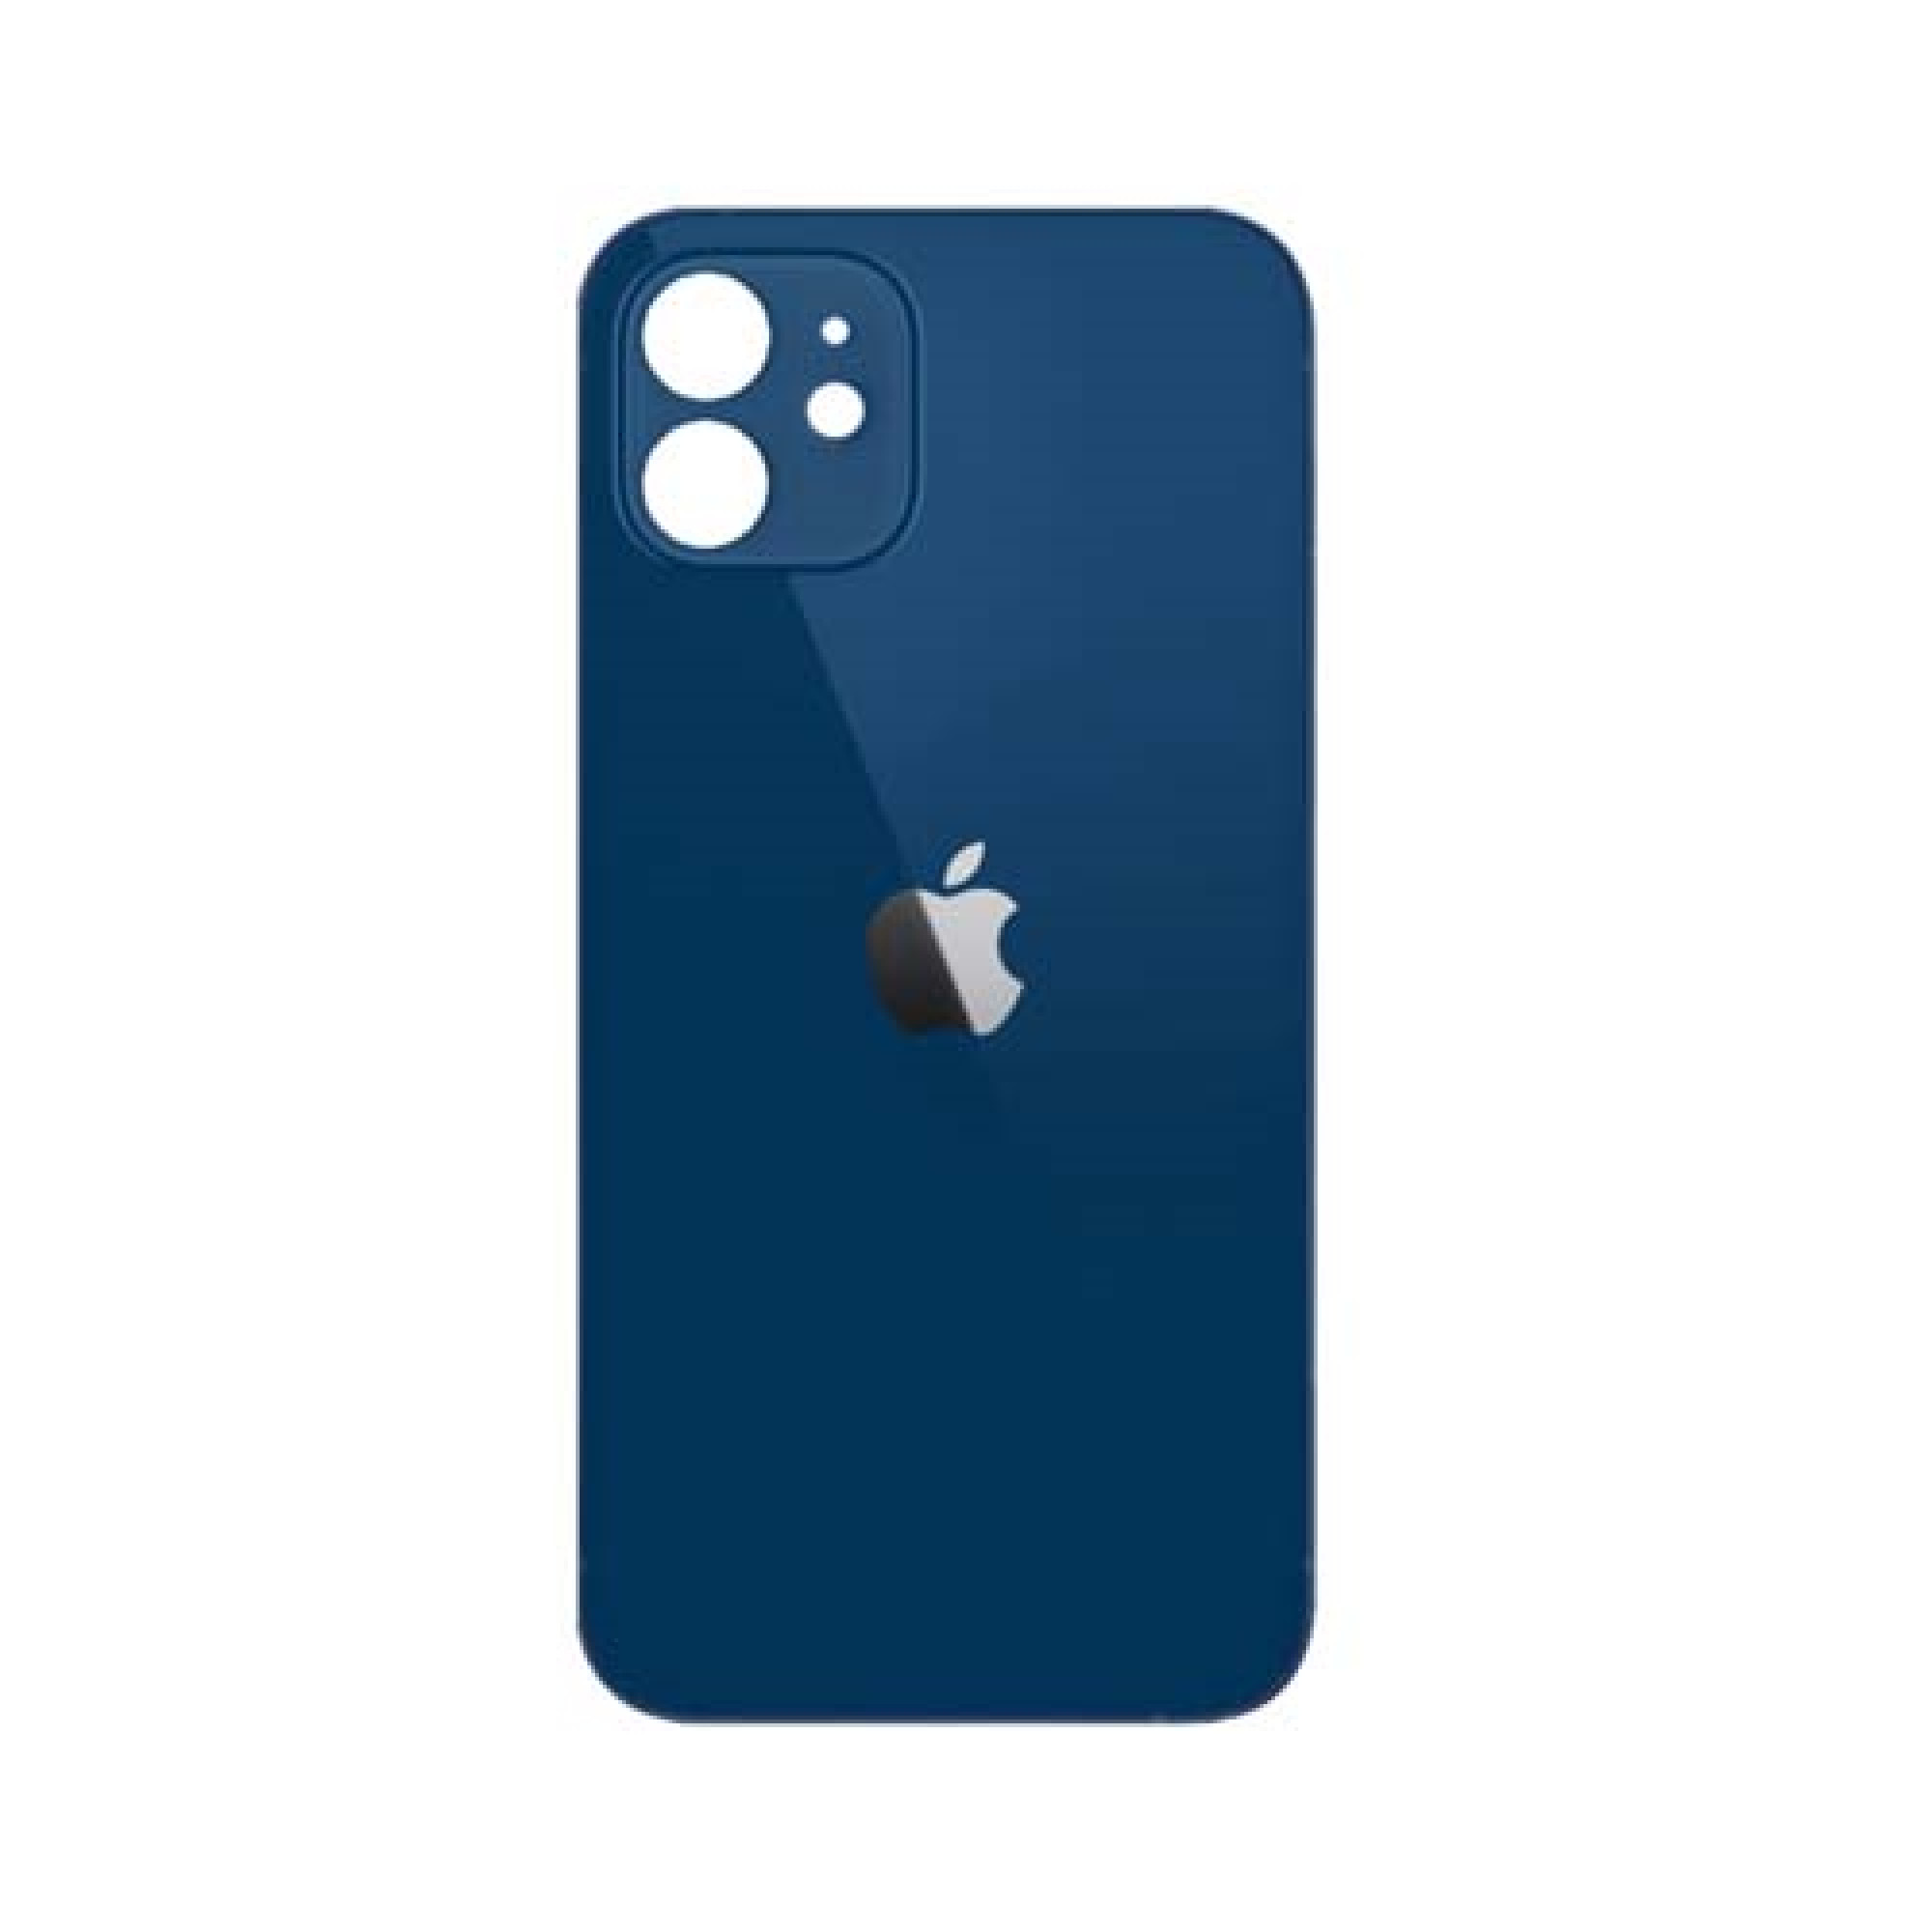 Задняя крышка для Apple iPhone 12 (широкое отверстие под камеру), синяя